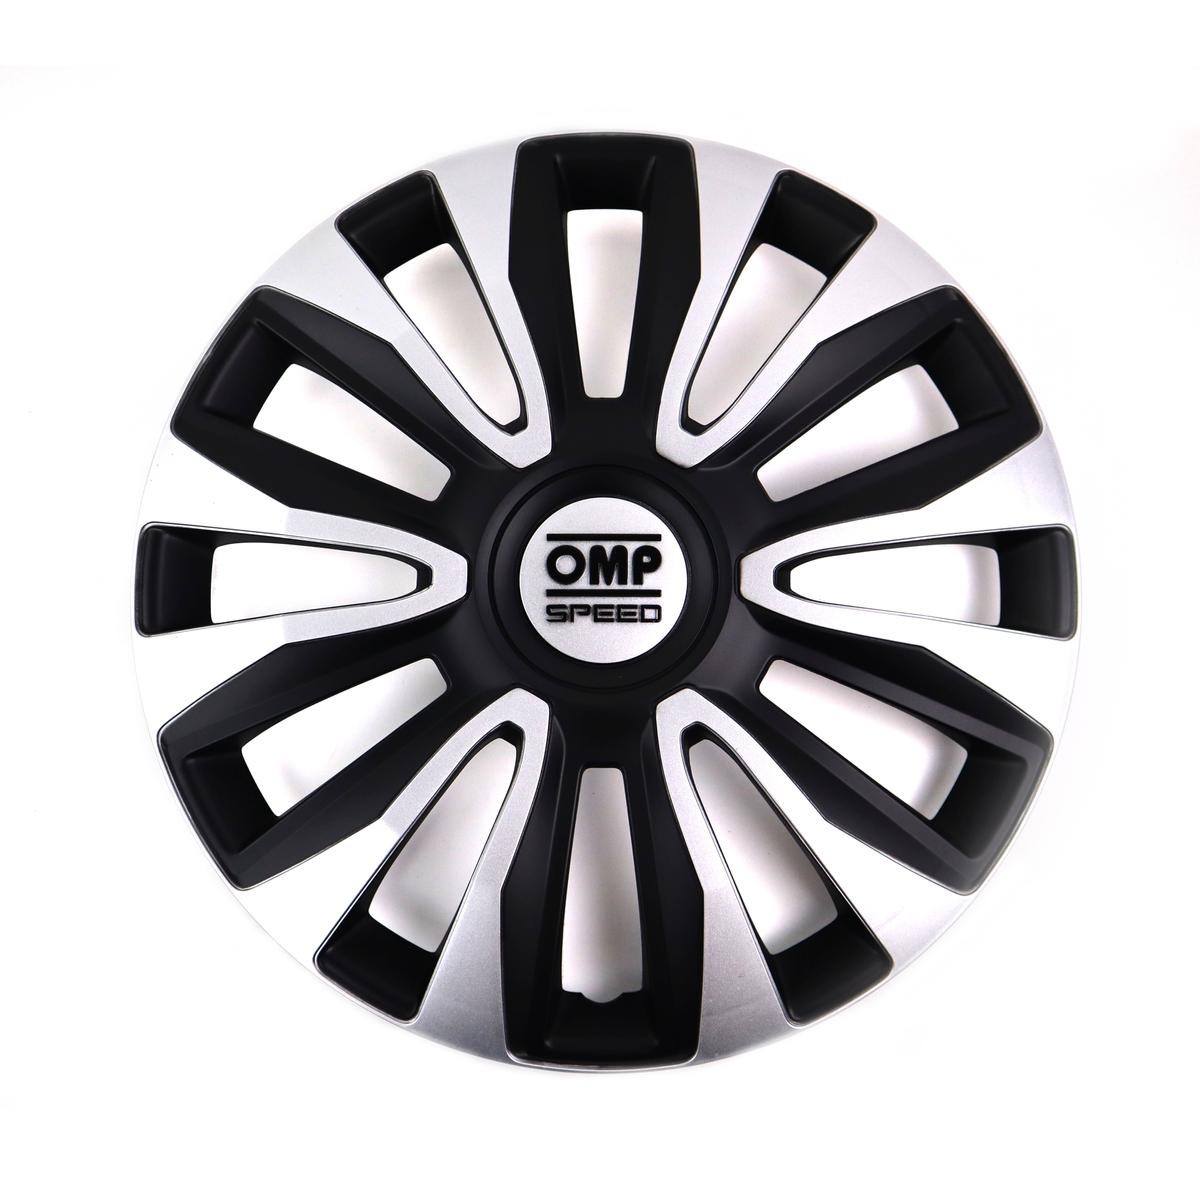 OMP OMPS07011412 Car wheel trims MERCEDES-BENZ B-Class (W246, W242) 14 Inch black, silver